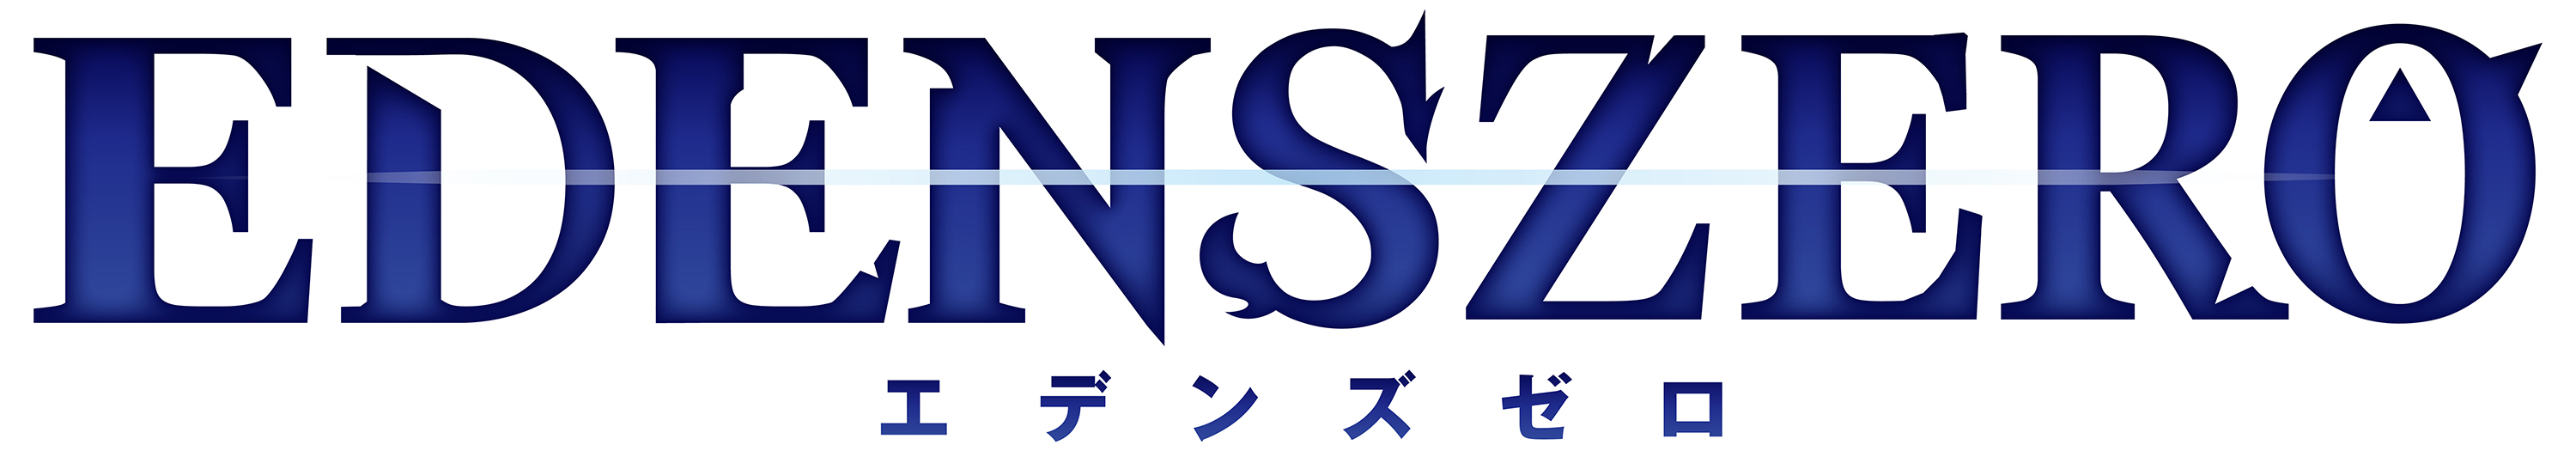 真島ヒロ氏の人気sf漫画 エデンズゼロ を原作とするゲームが制作決定 6月発表のテレビアニメ化も含む続報は 東京ゲーム ニコニコニュース